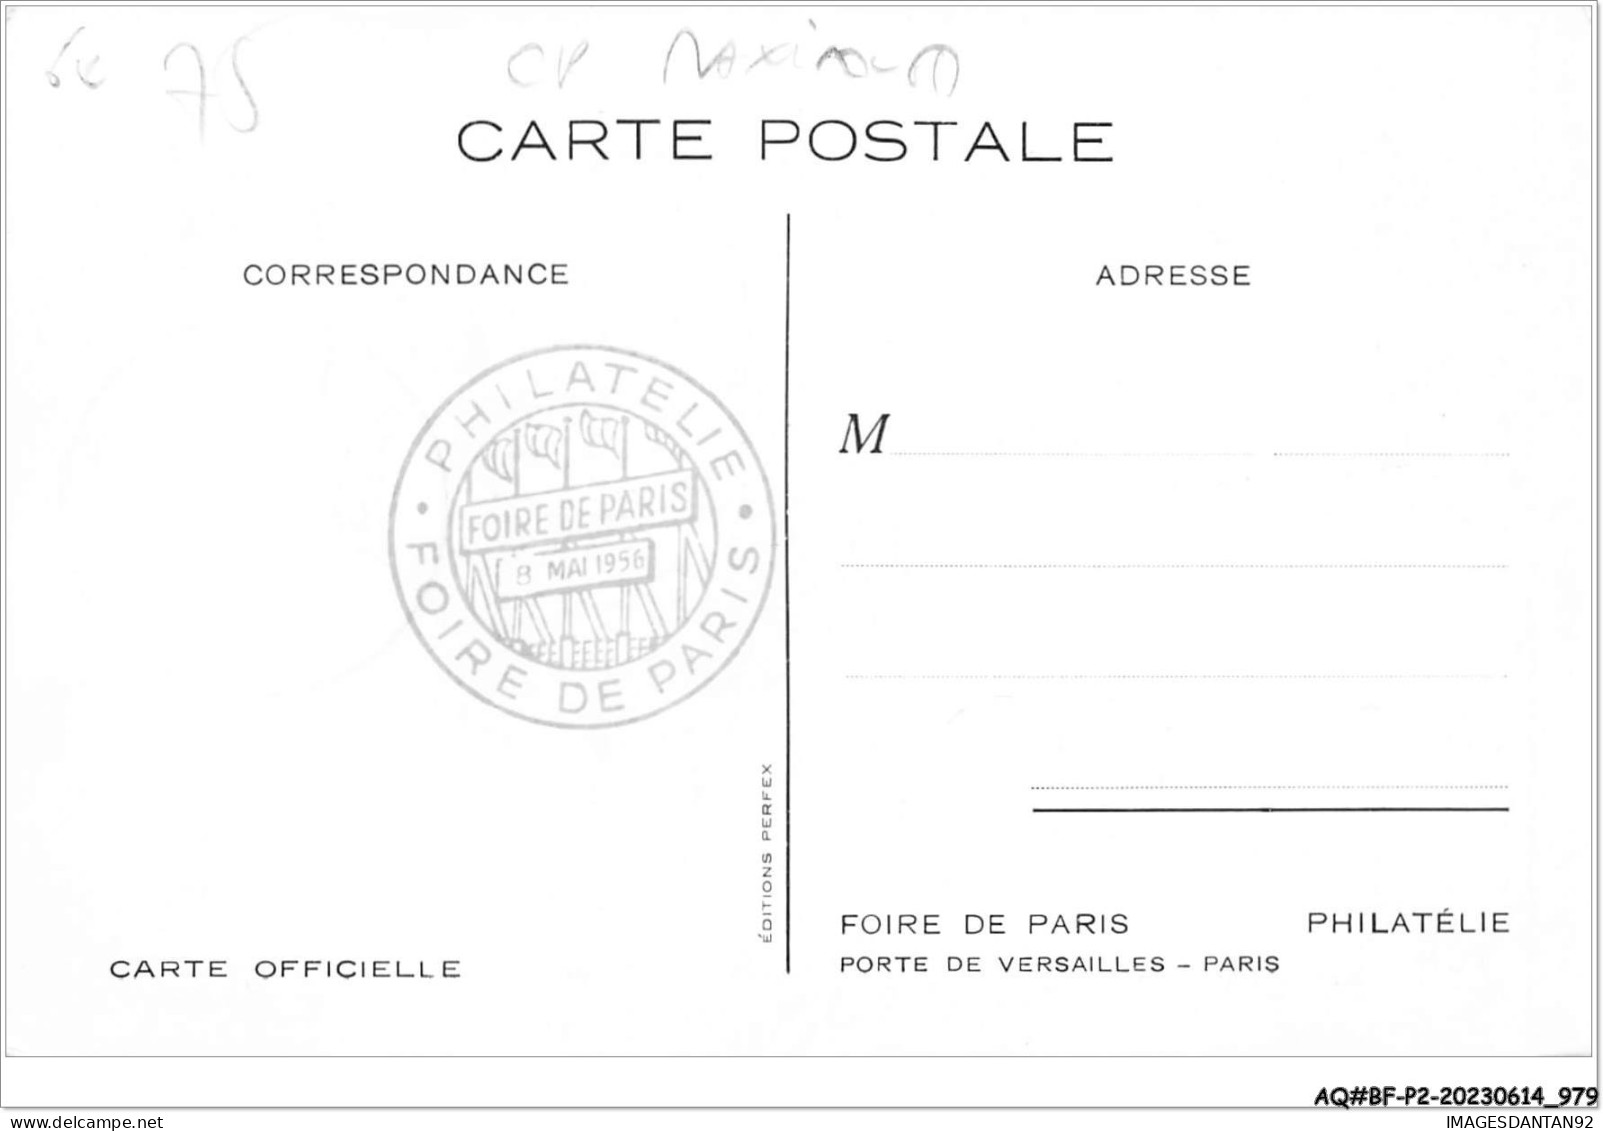 AQ#BFP2-75-0487 - PARIS - Foire De Paris 1956 - Philatérie - Carte Maximum - Expositions